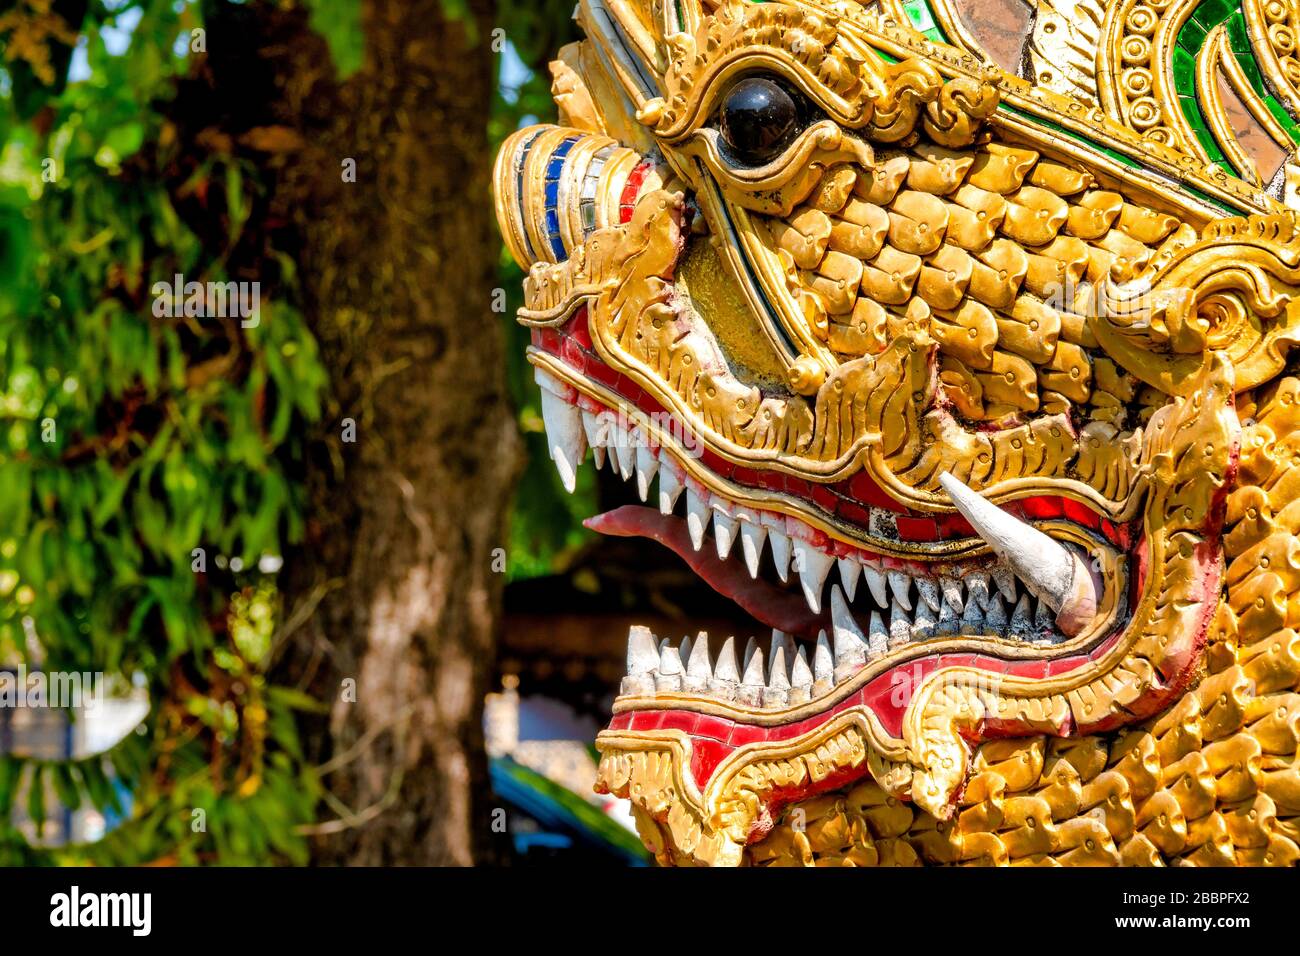 Gros plan sur une sculpture d'un dragon thaïlandais. Les Dragons protègent les temples et sont associés à la sagesse et à la longévité Banque D'Images